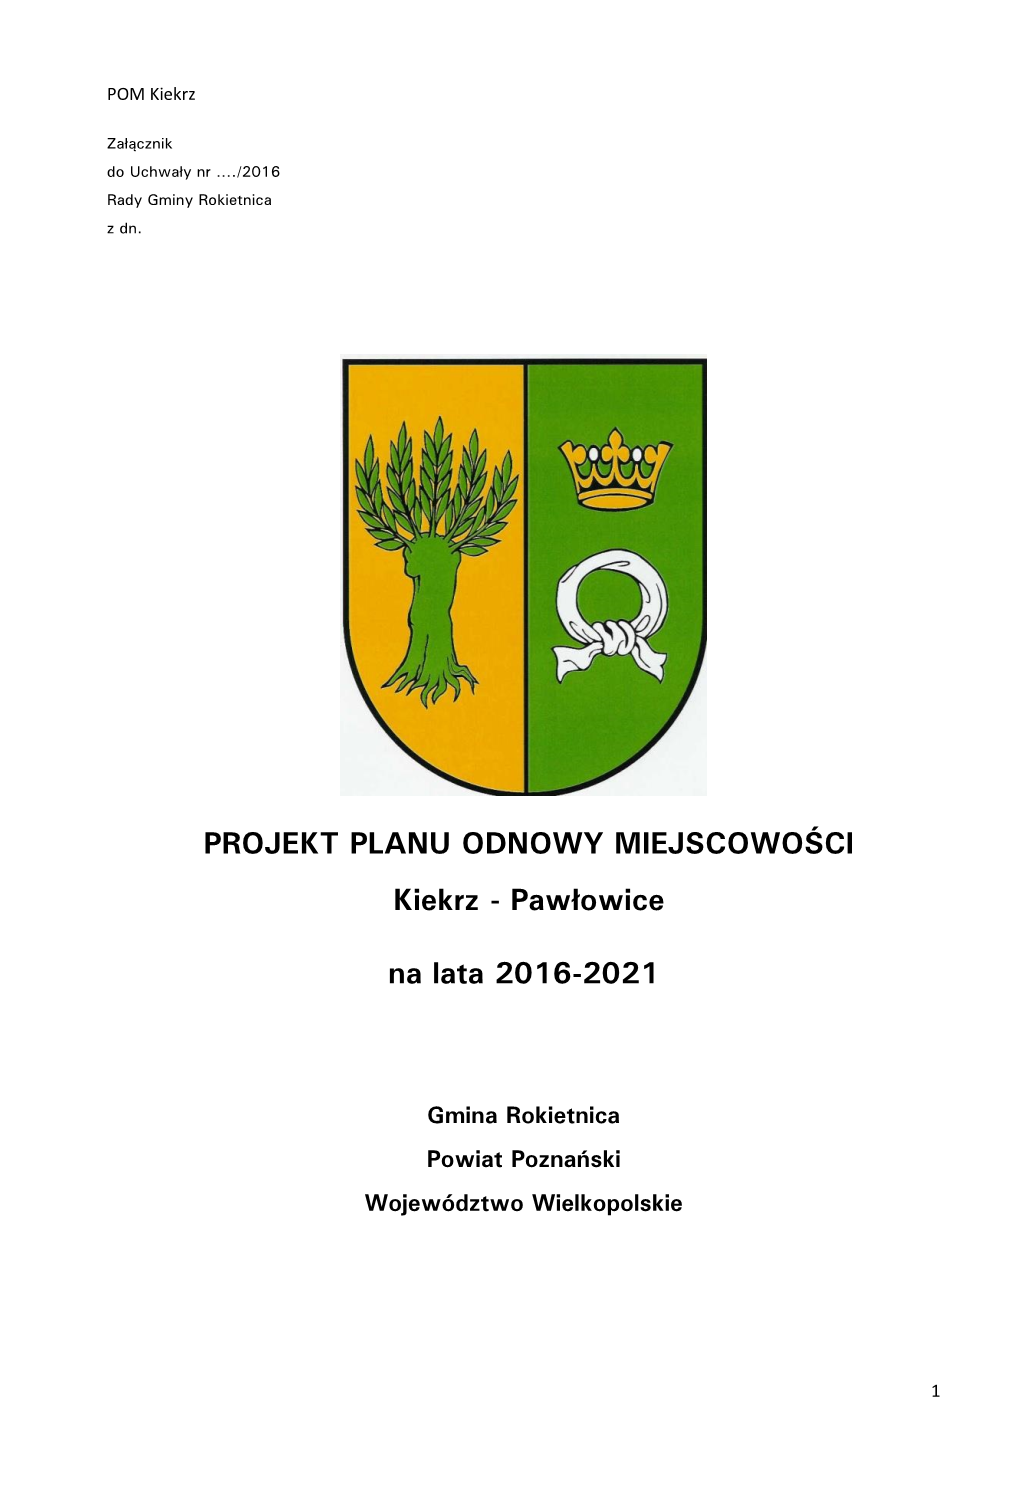 PROJEKT PLANU ODNOWY MIEJSCOWOŚCI Kiekrz - Pawłowice